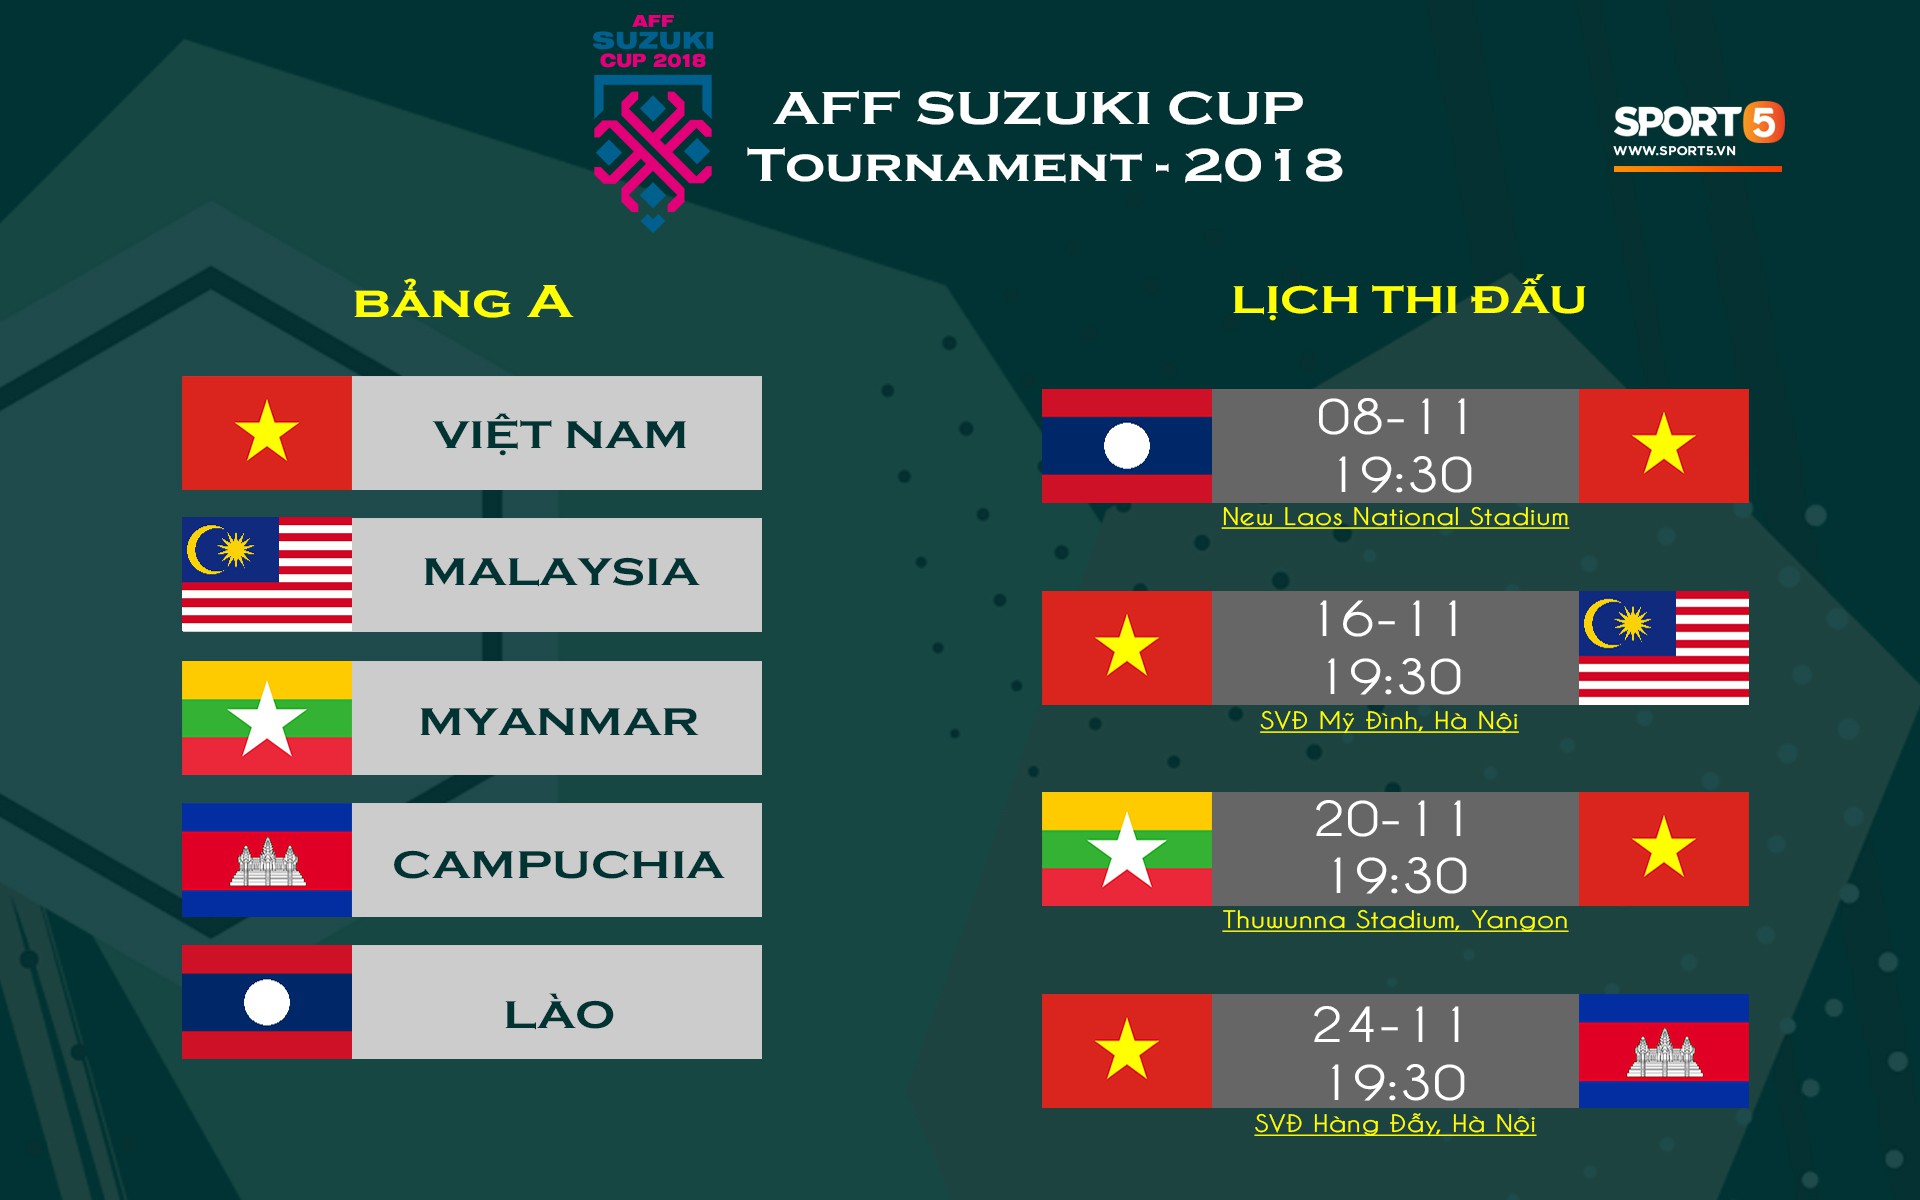 Tuyển Việt Nam bất ngờ loại 2 tuyển thủ trong đêm, chính thức chốt danh sách dự AFF Cup 2018-3